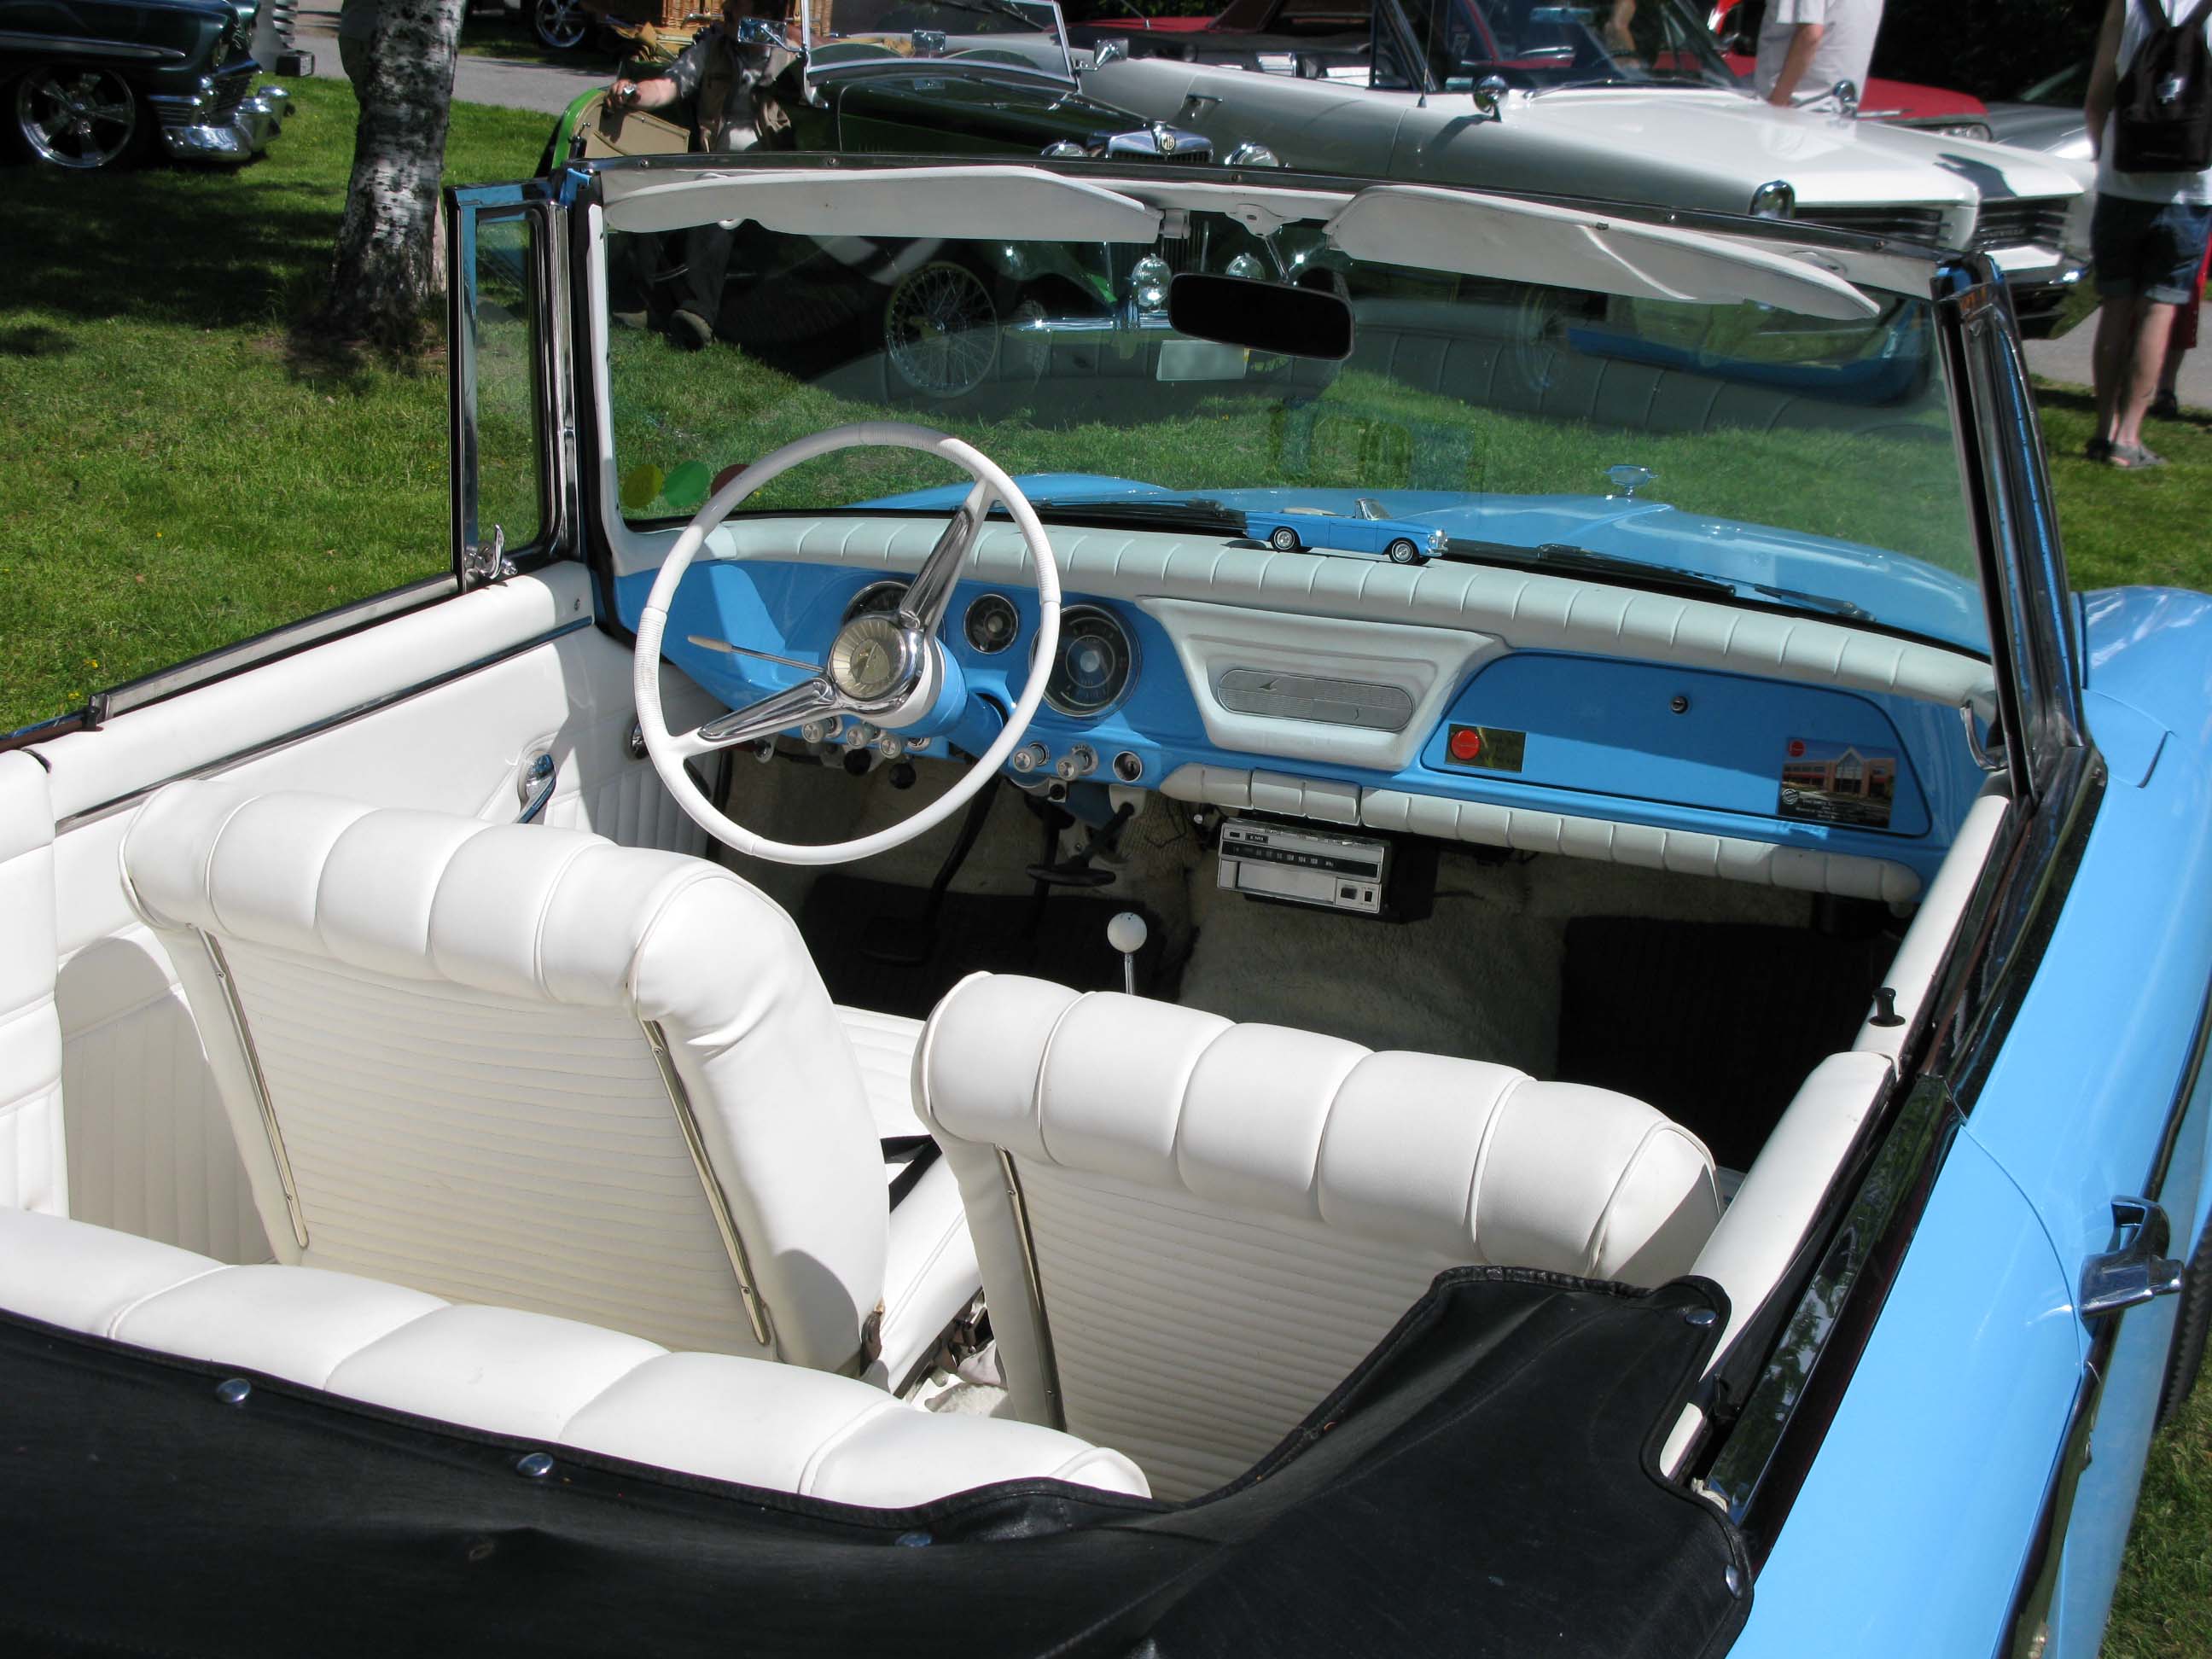 File:1962 Studebaker Lark Daytona dash.jpg - Wikimedia Commons